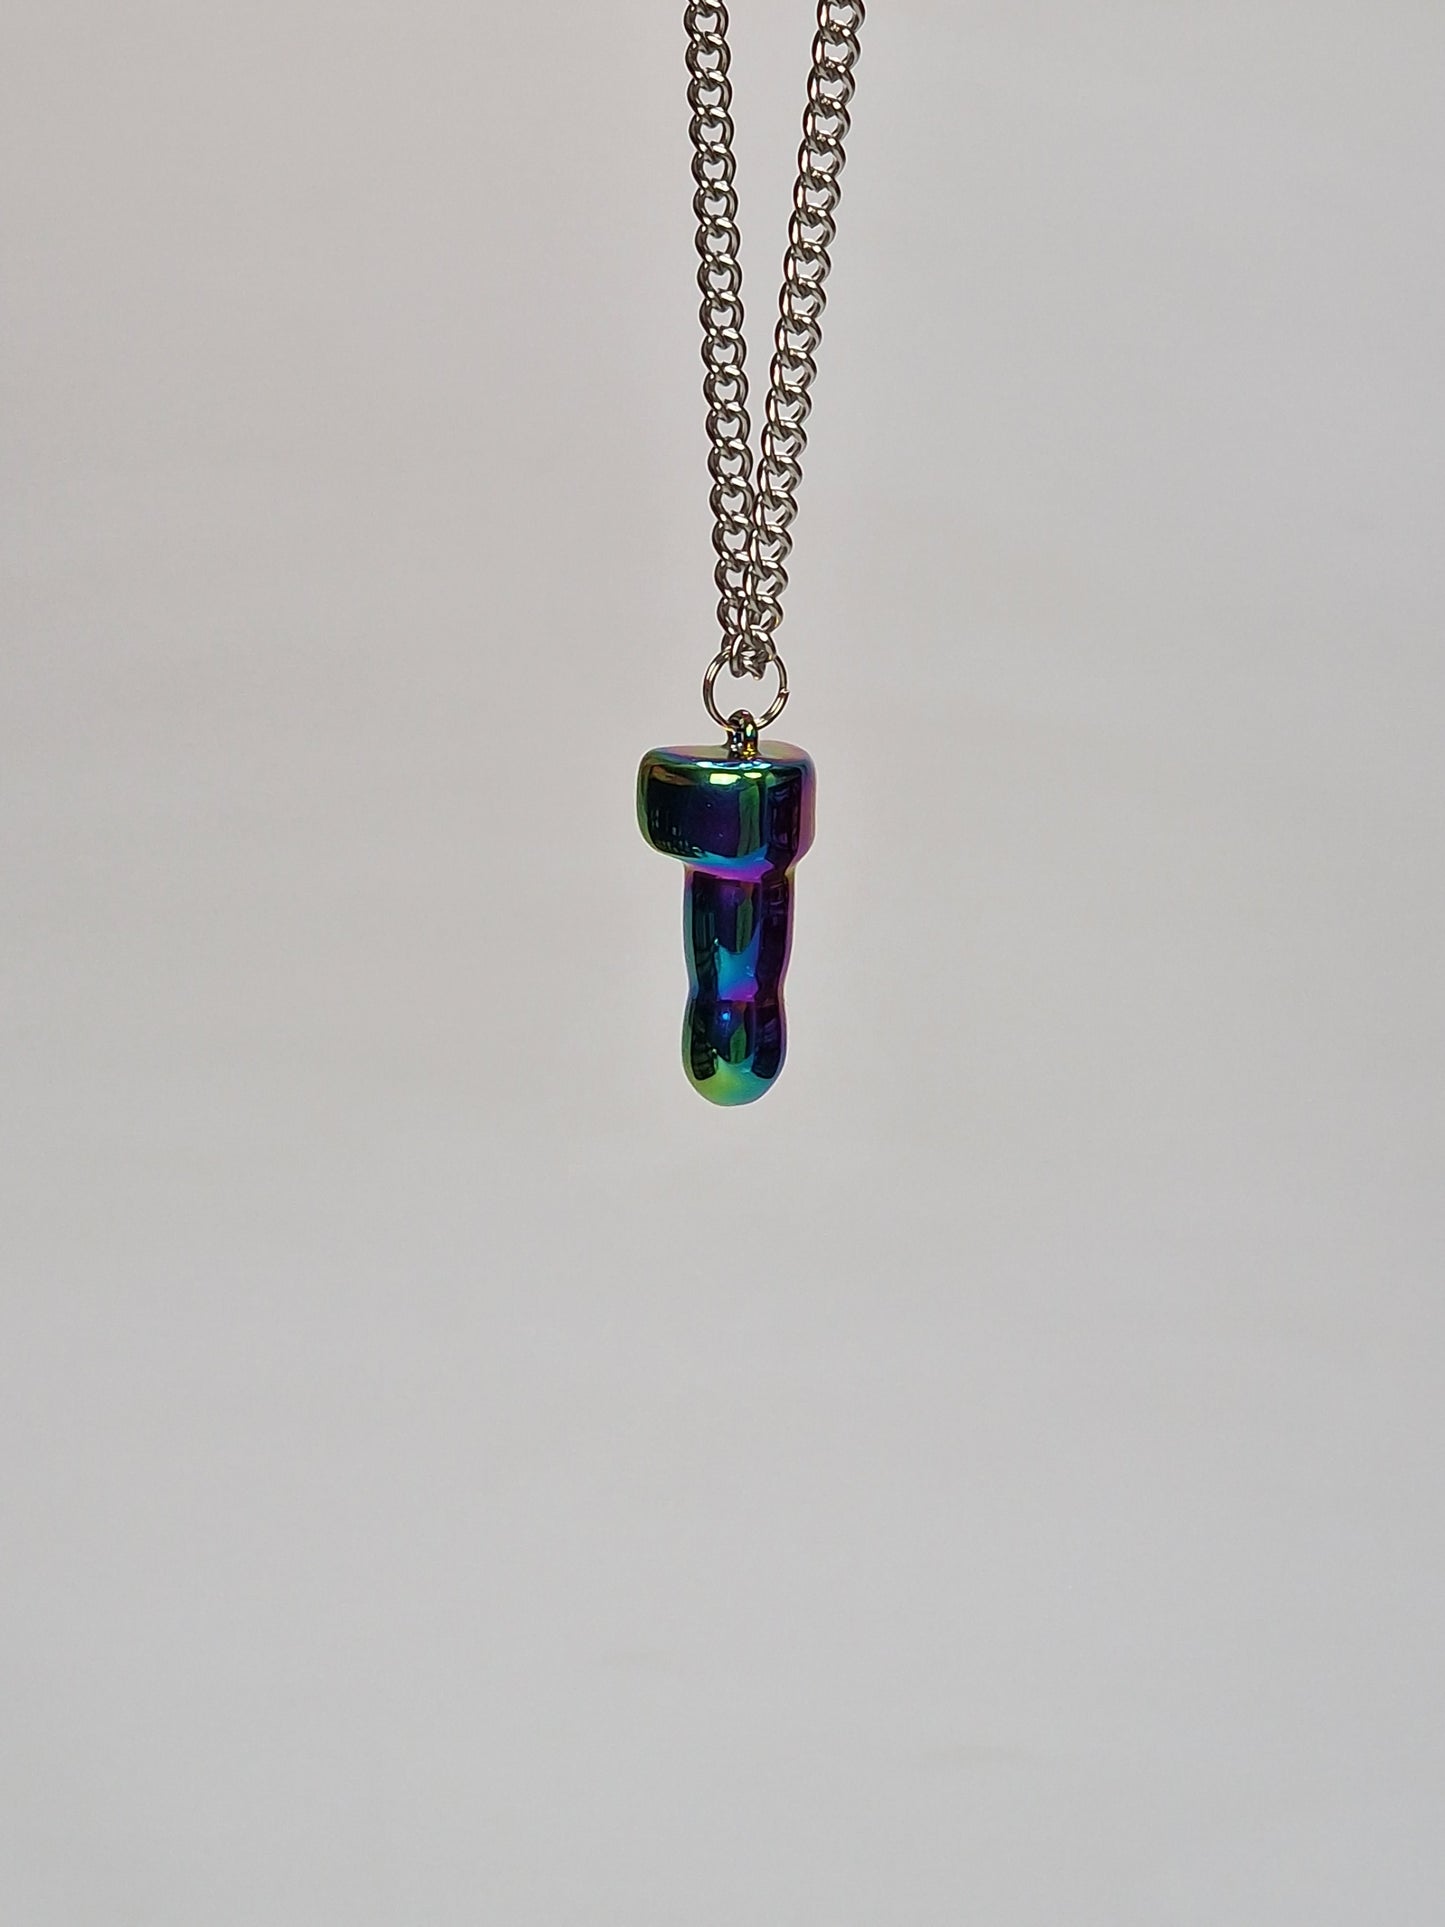 Spännande och unikt herr eller damhalsband i multicolor eller regnbågsfärgad metall - ett hängsmycke eller smycke i form av en dick på 2,5 cm